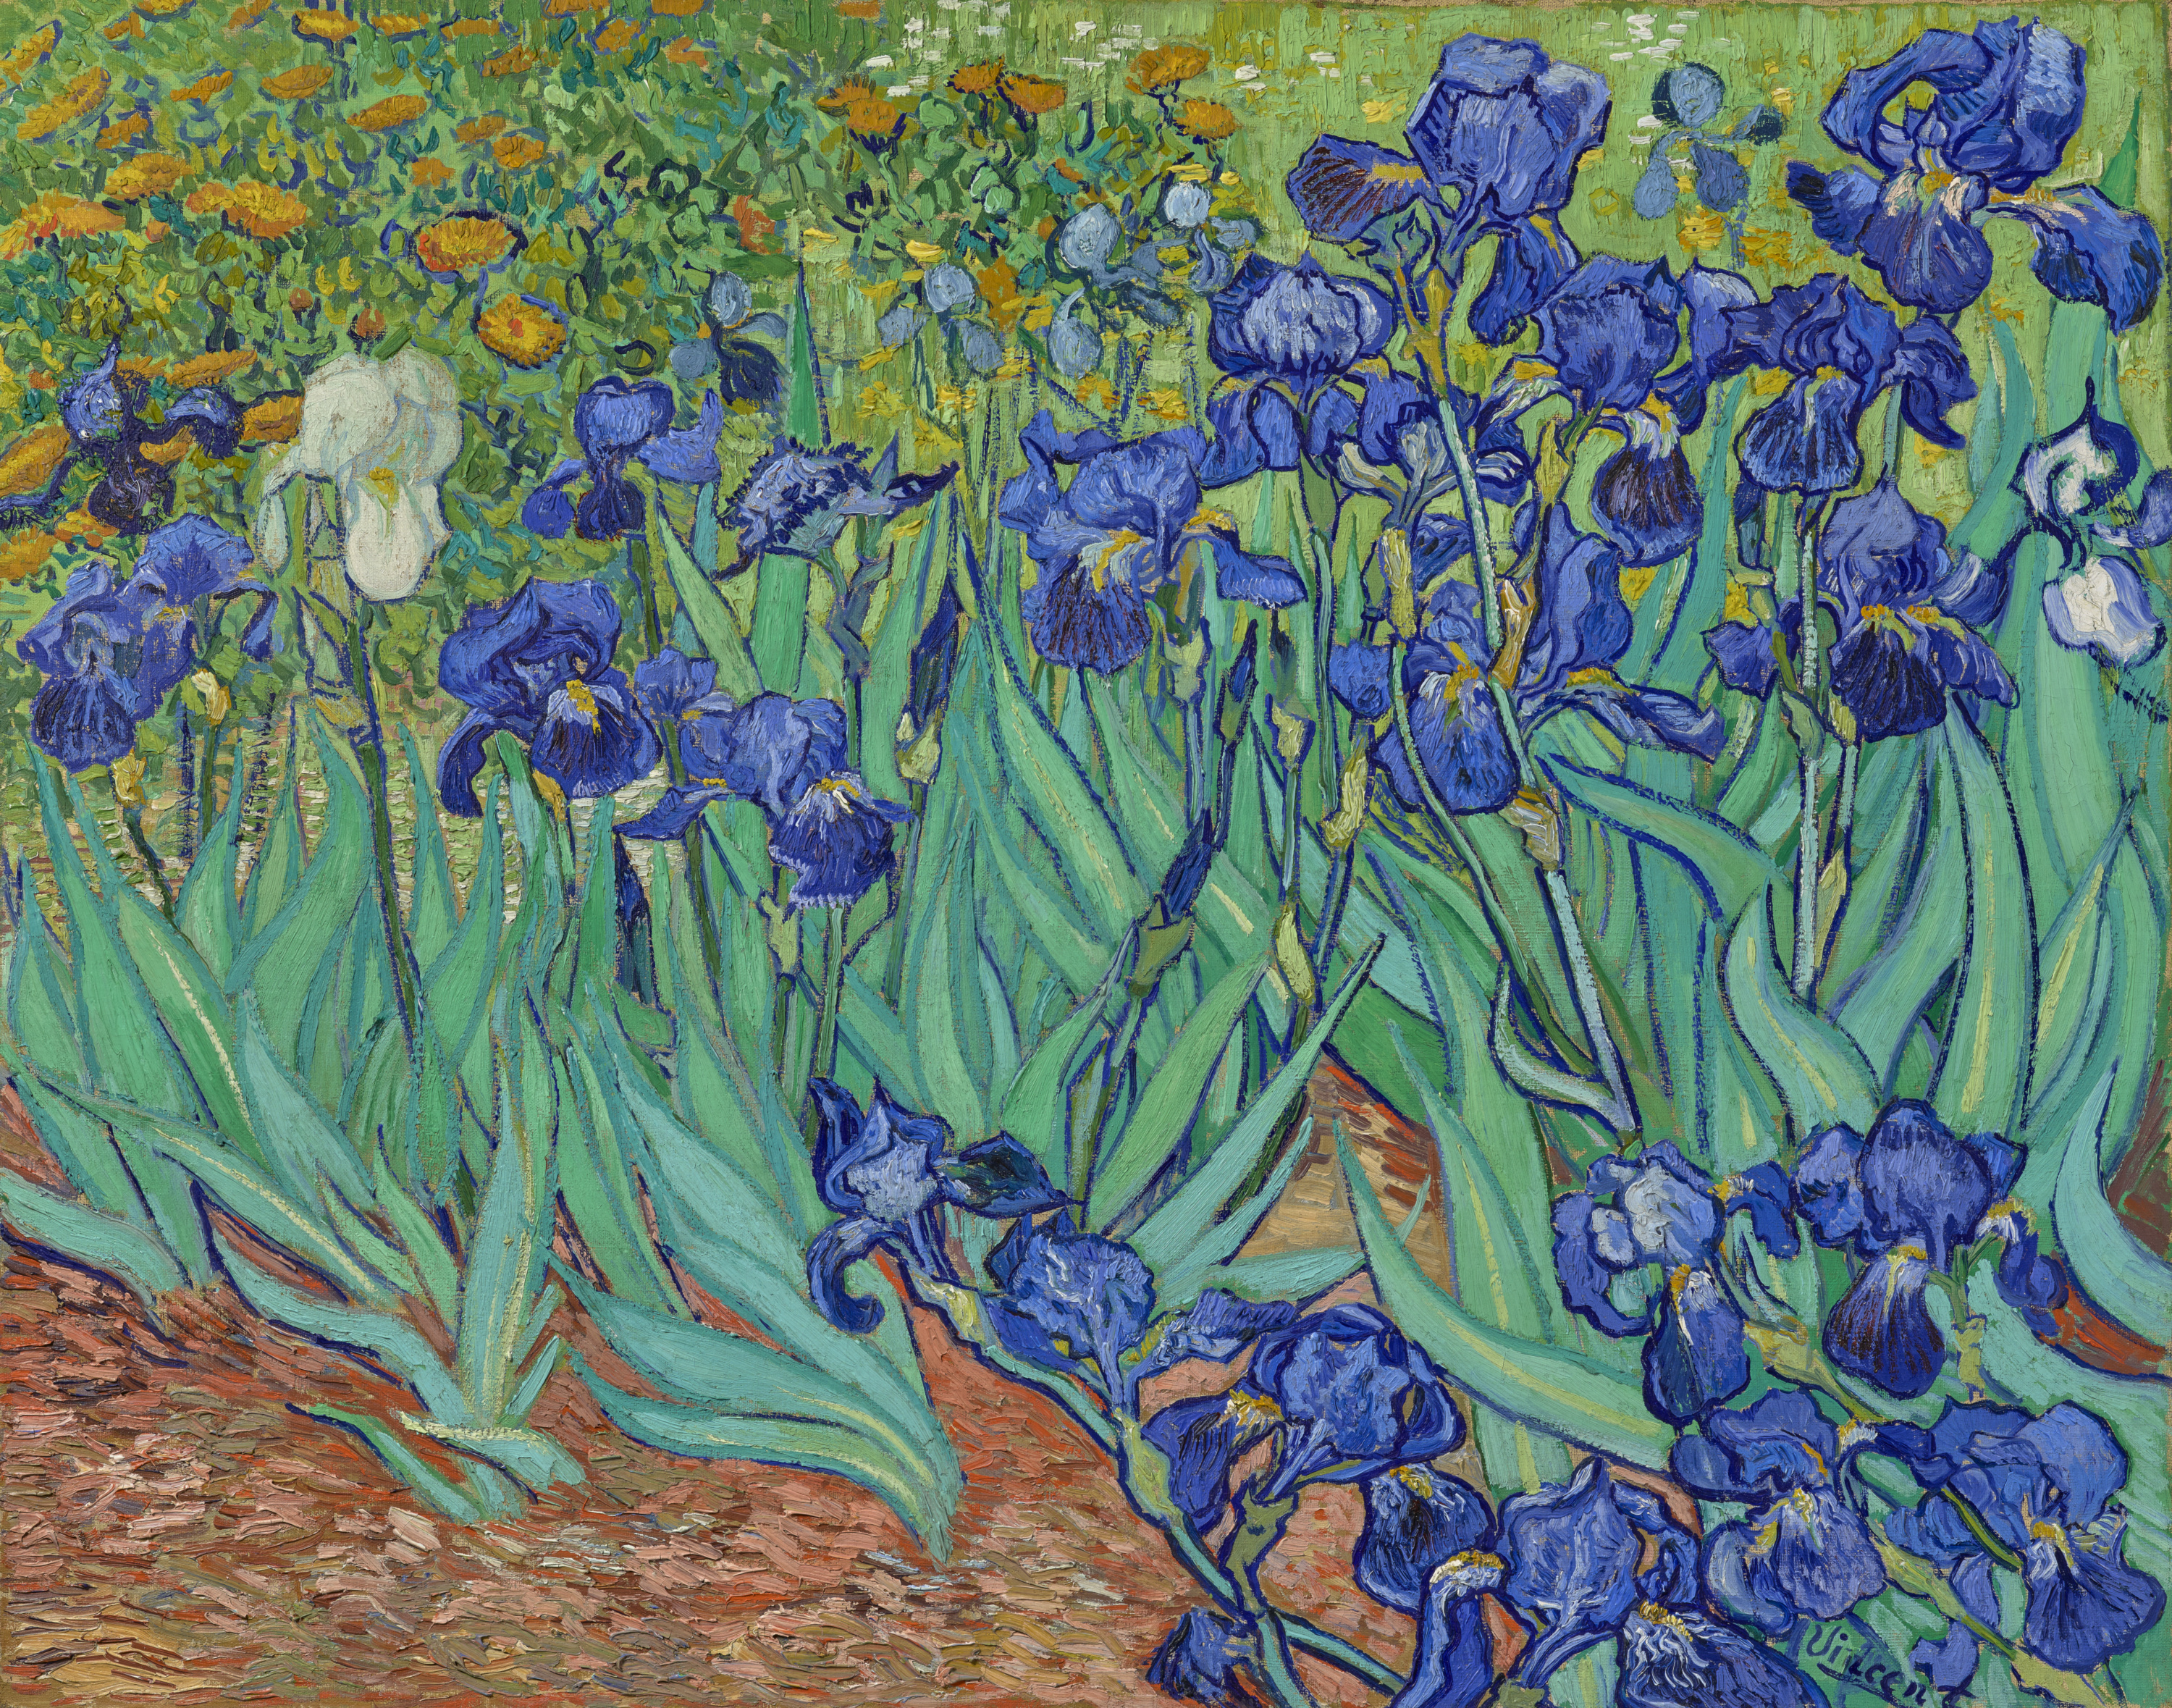 붓꽃 (Irises) by 빈센트 반 고흐 - 1889 - 74.3 × 94.3 cm 